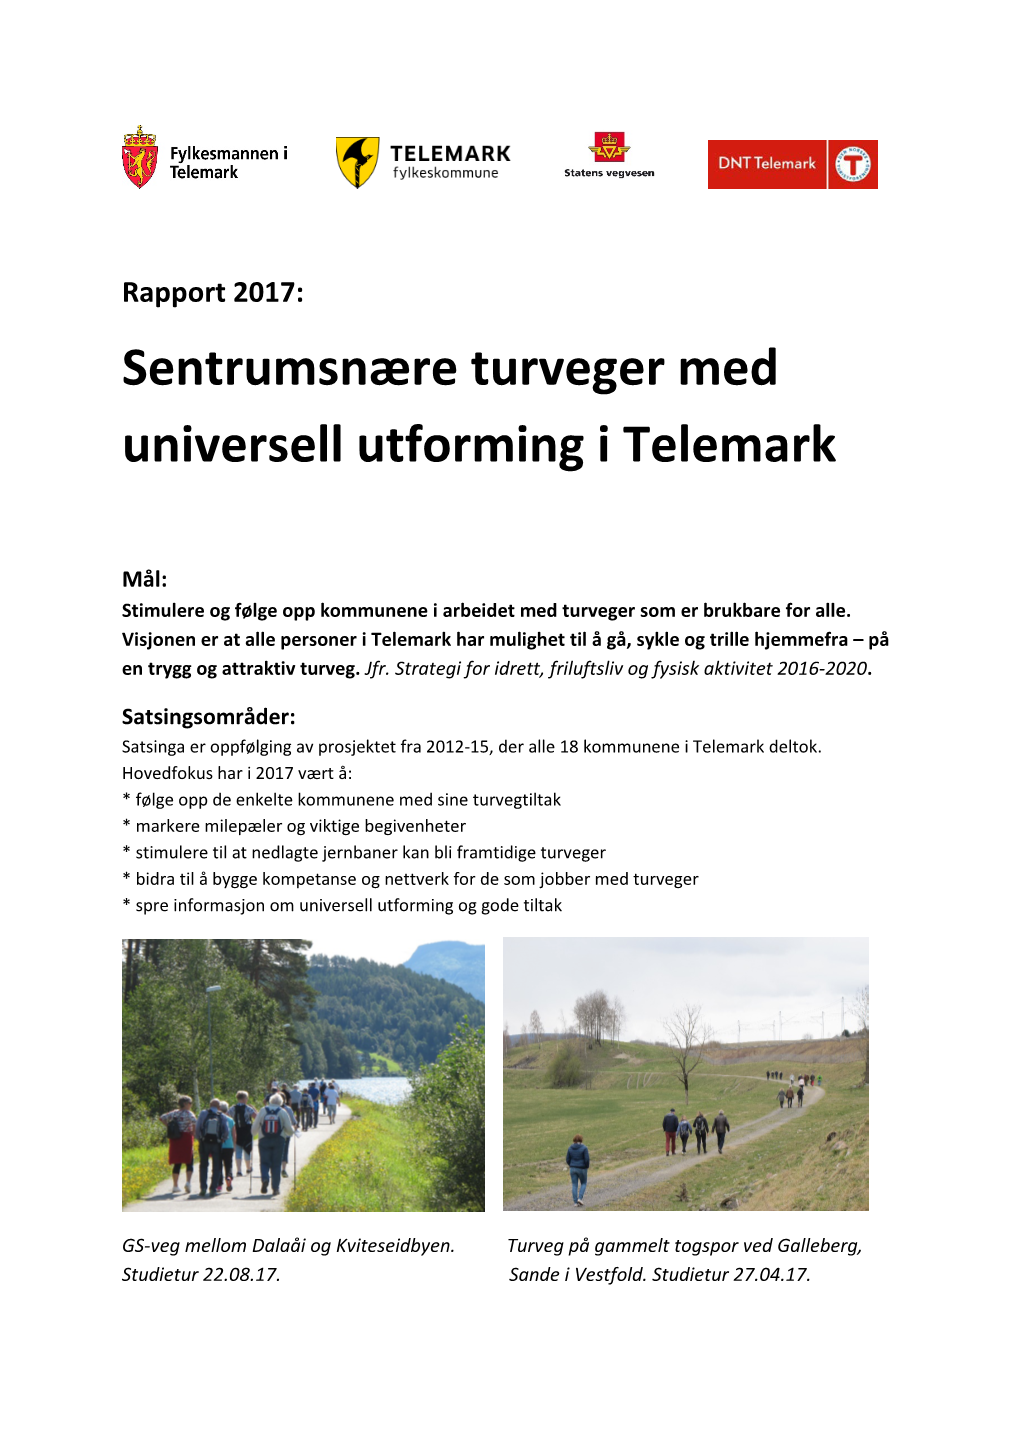 Sentrumsnære Turveger Med Universell Utforming I Telemark